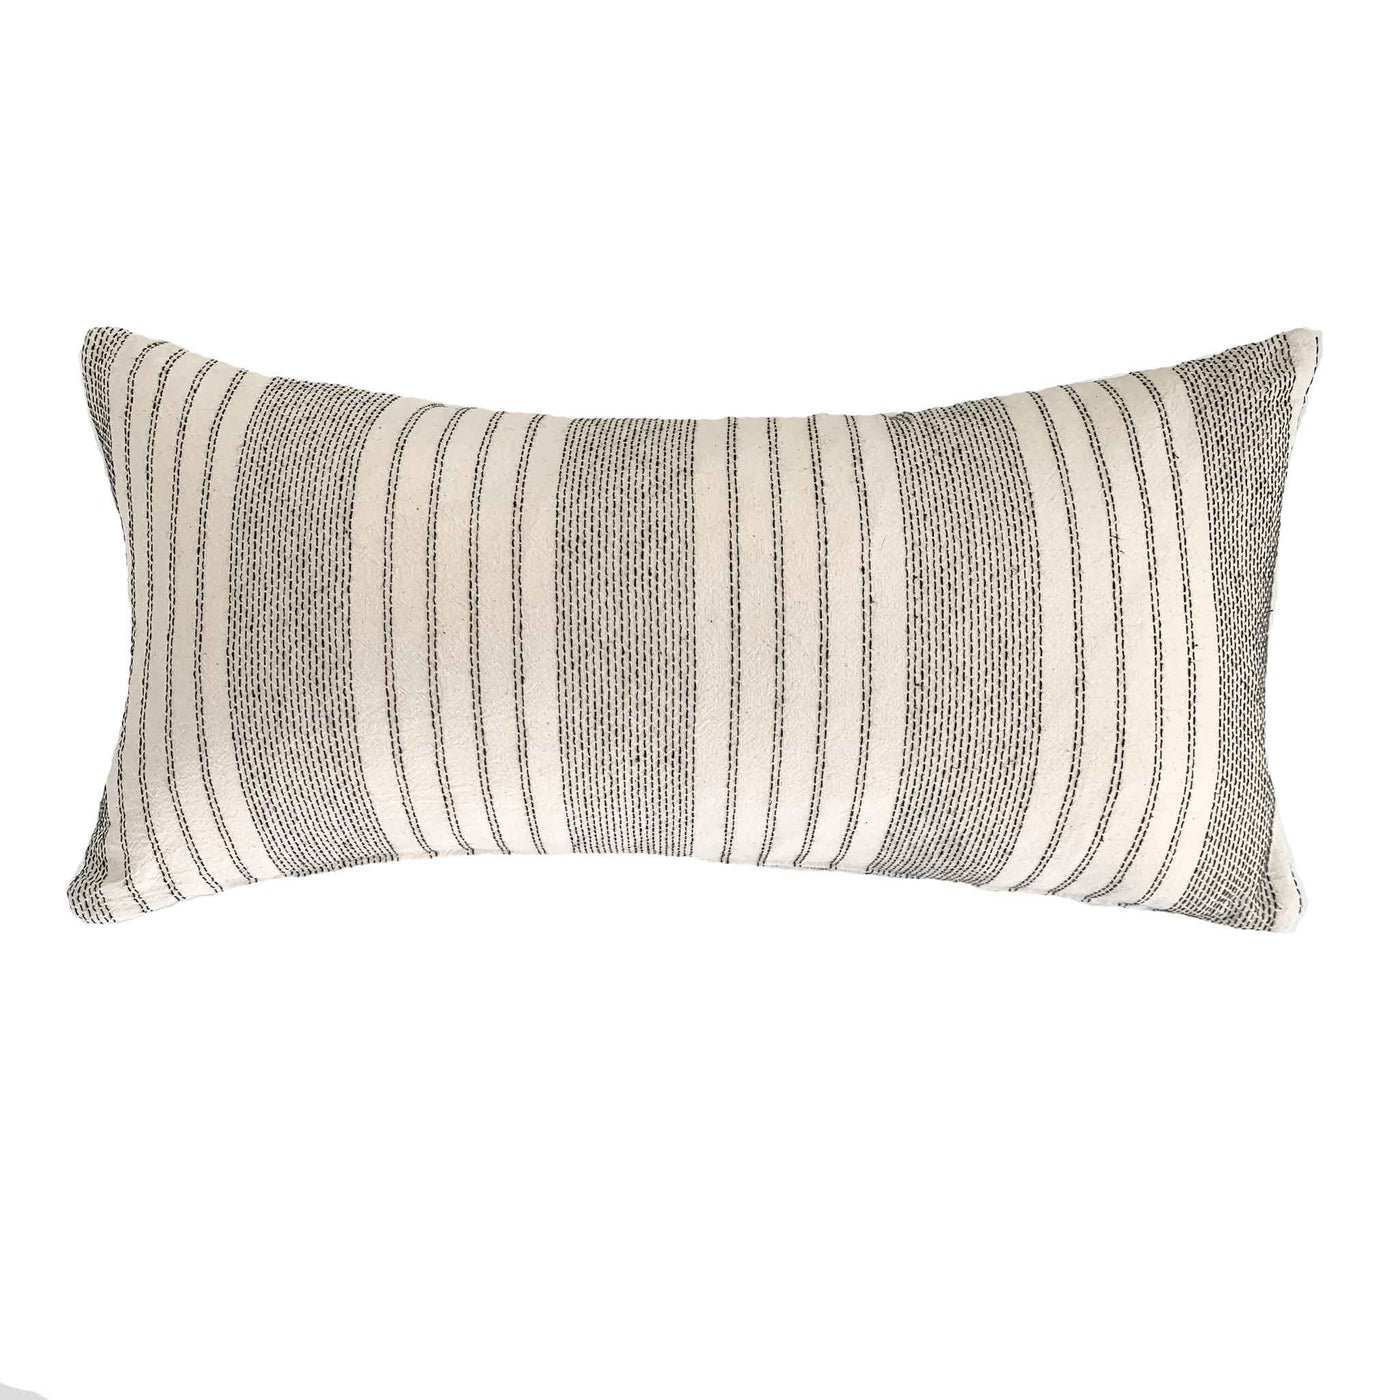 Hmong Batik Lumbar Pillow - Studio Pillows